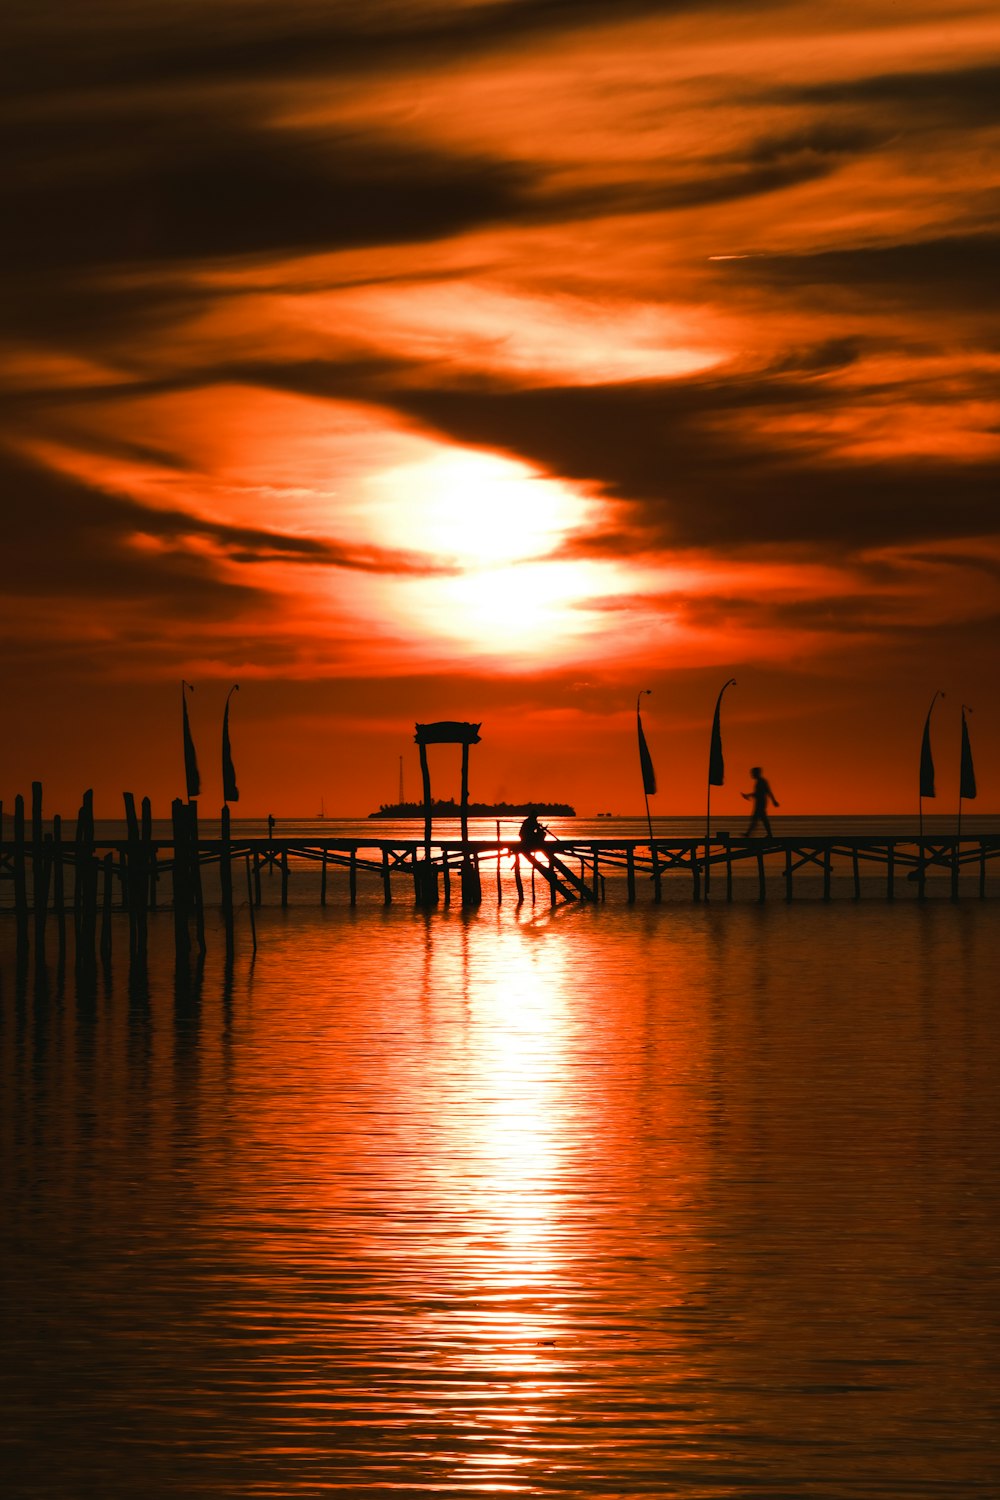 silhouette de personnes sur la plage pendant le coucher du soleil